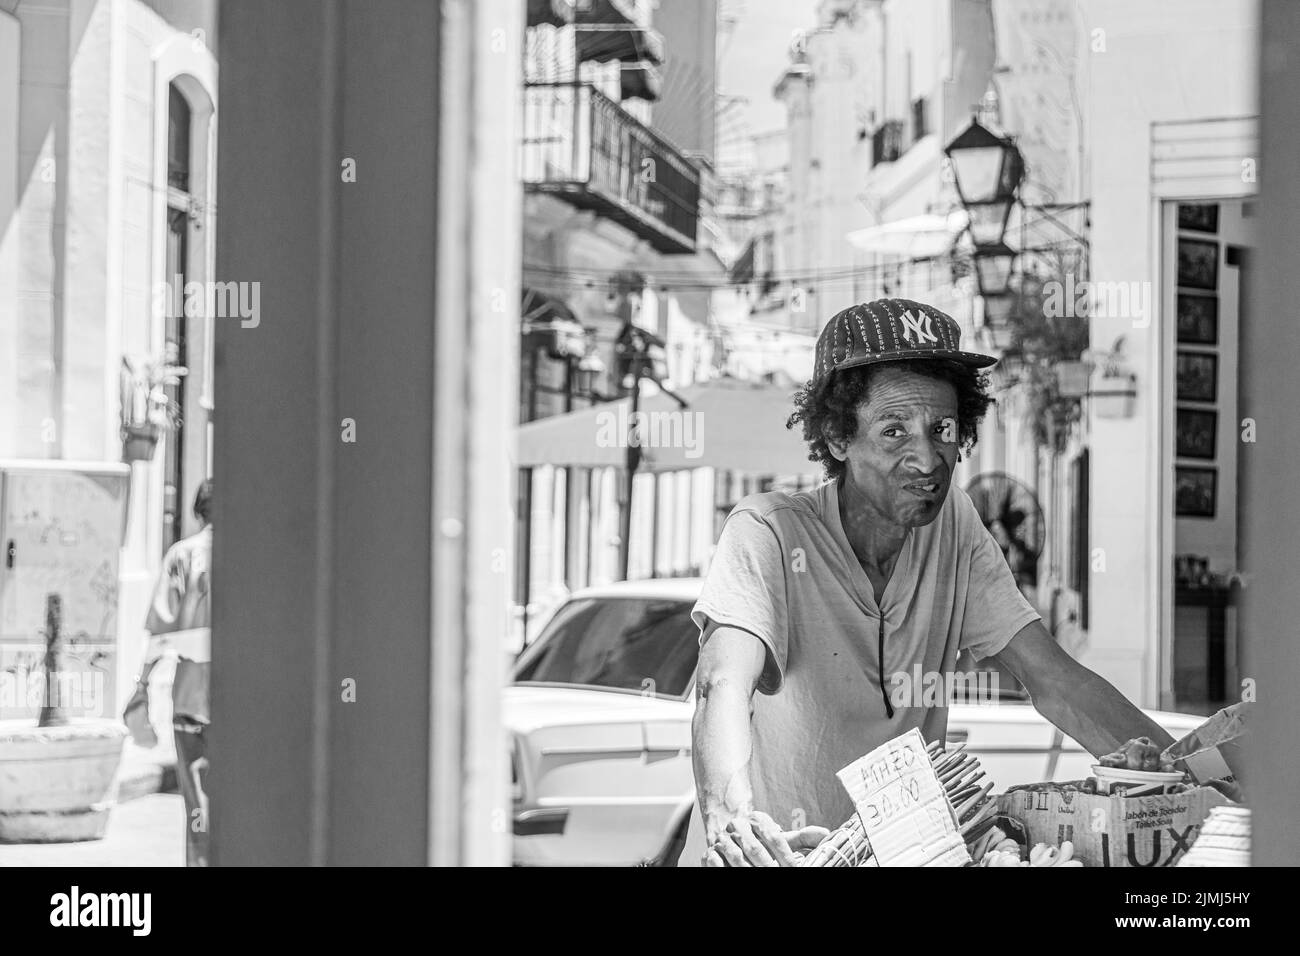 Un uomo cubano alla fine degli anni Venti che vende frutta e verdura dal suo carrello. Fotografato attraverso la finestra di un ristorante. L'Avana, Cuba. Foto Stock